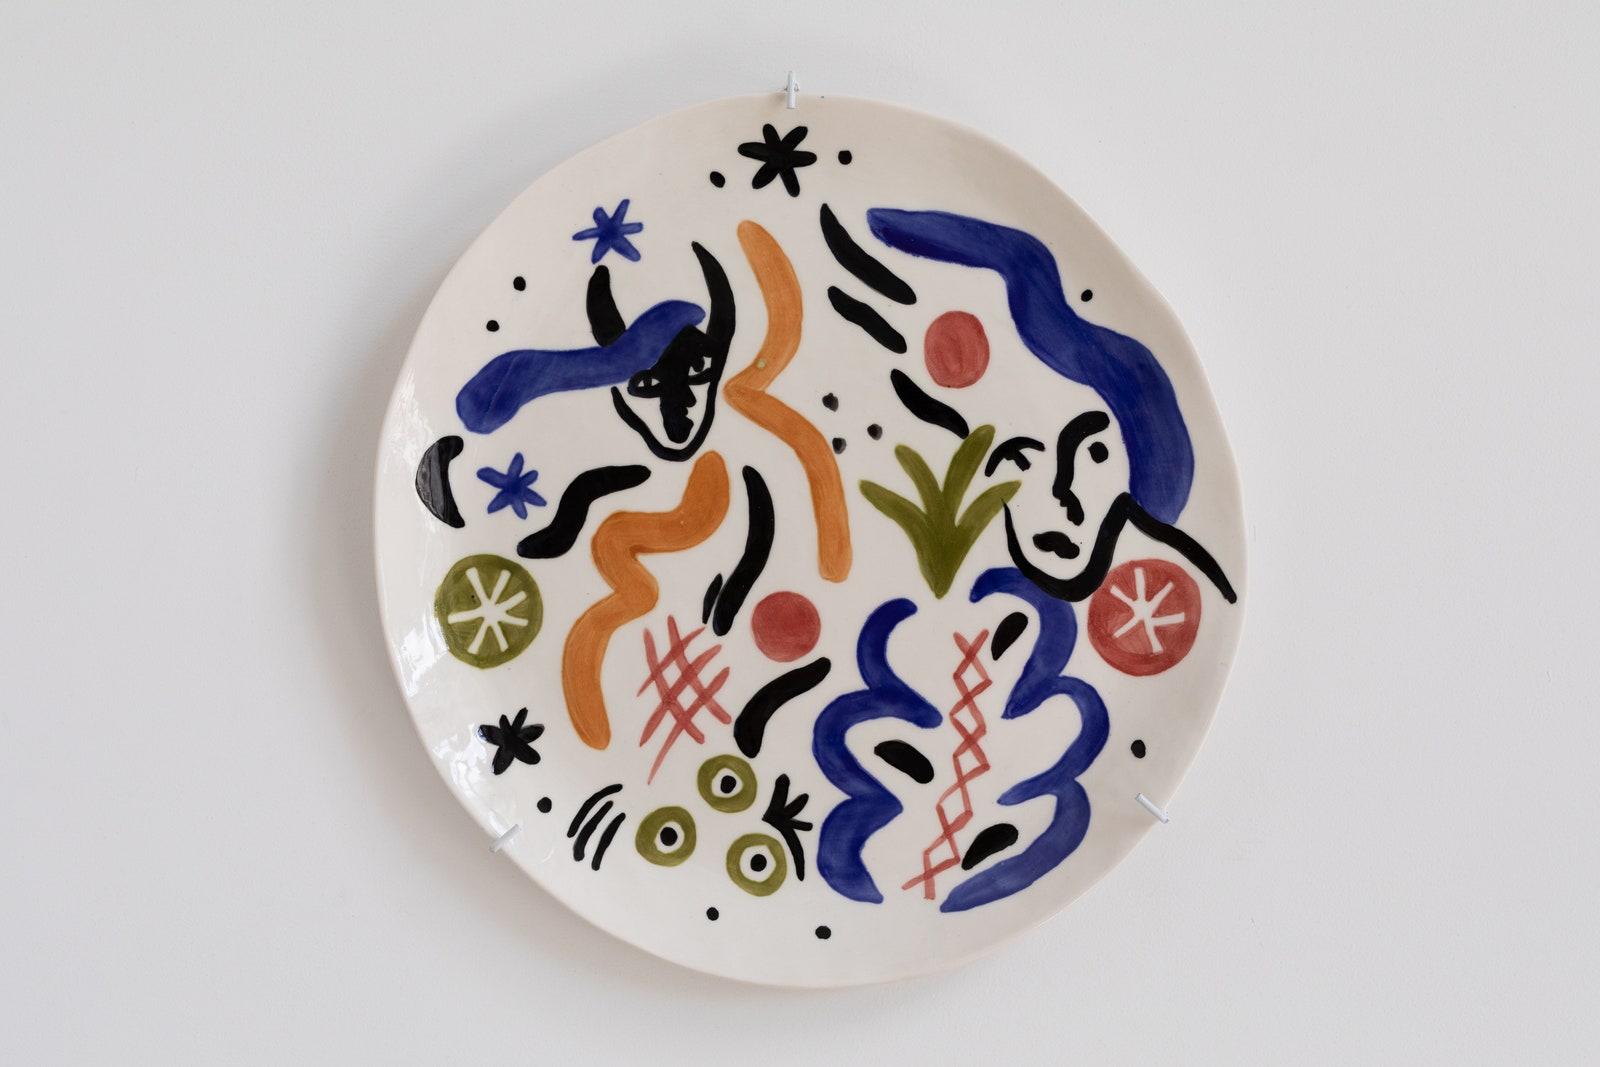 “Бульвар Софи Варен” выставка расписных керамических предметов от сестер Чельцовых в Lobby